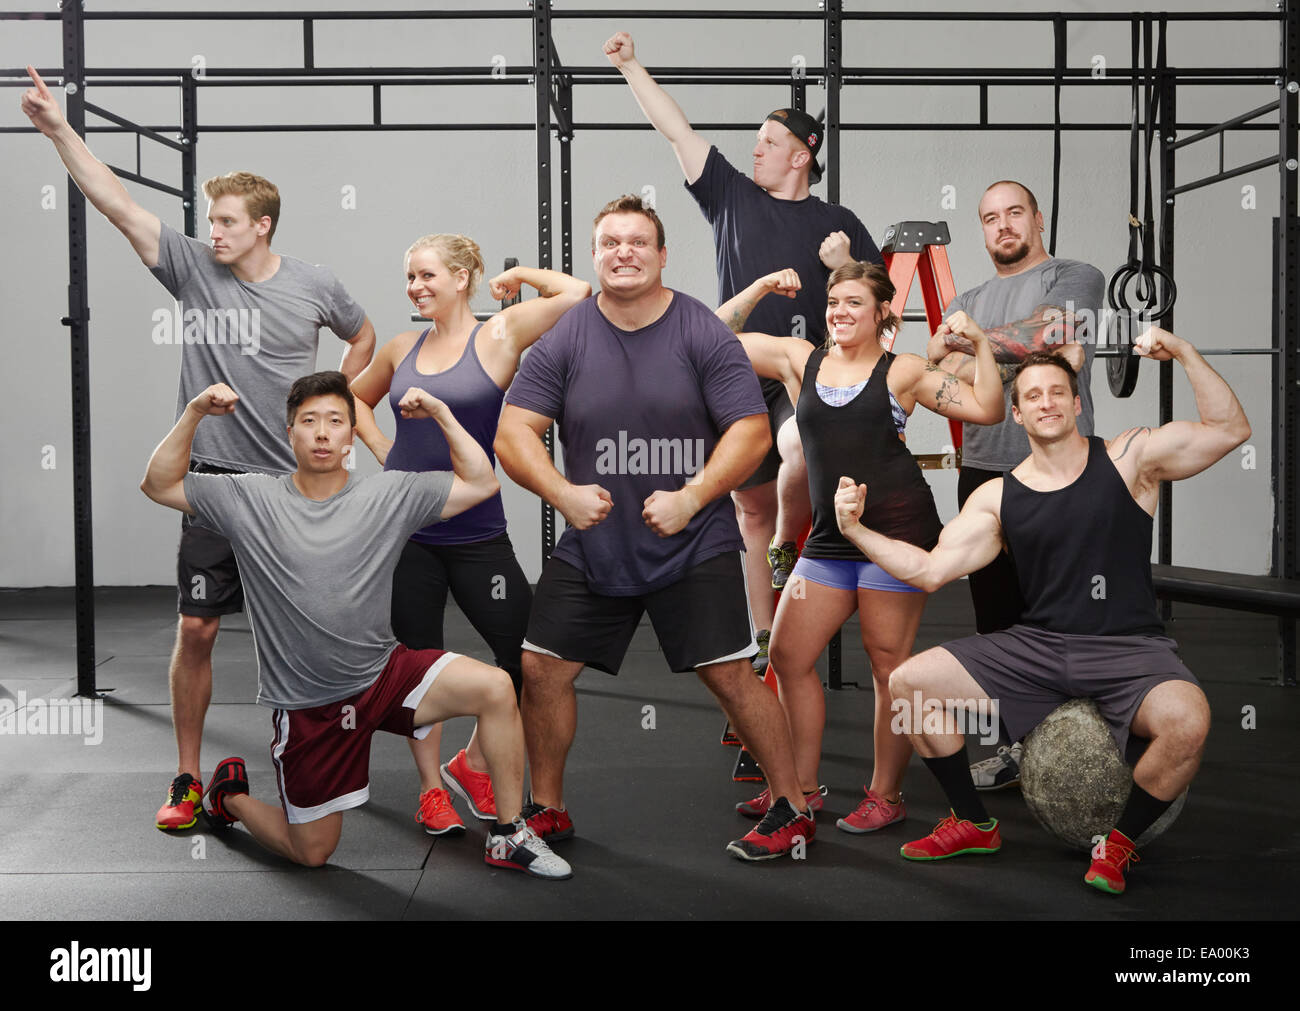 Porträt von acht Personen, die Muskeln im Fitness-Studio Stockfoto